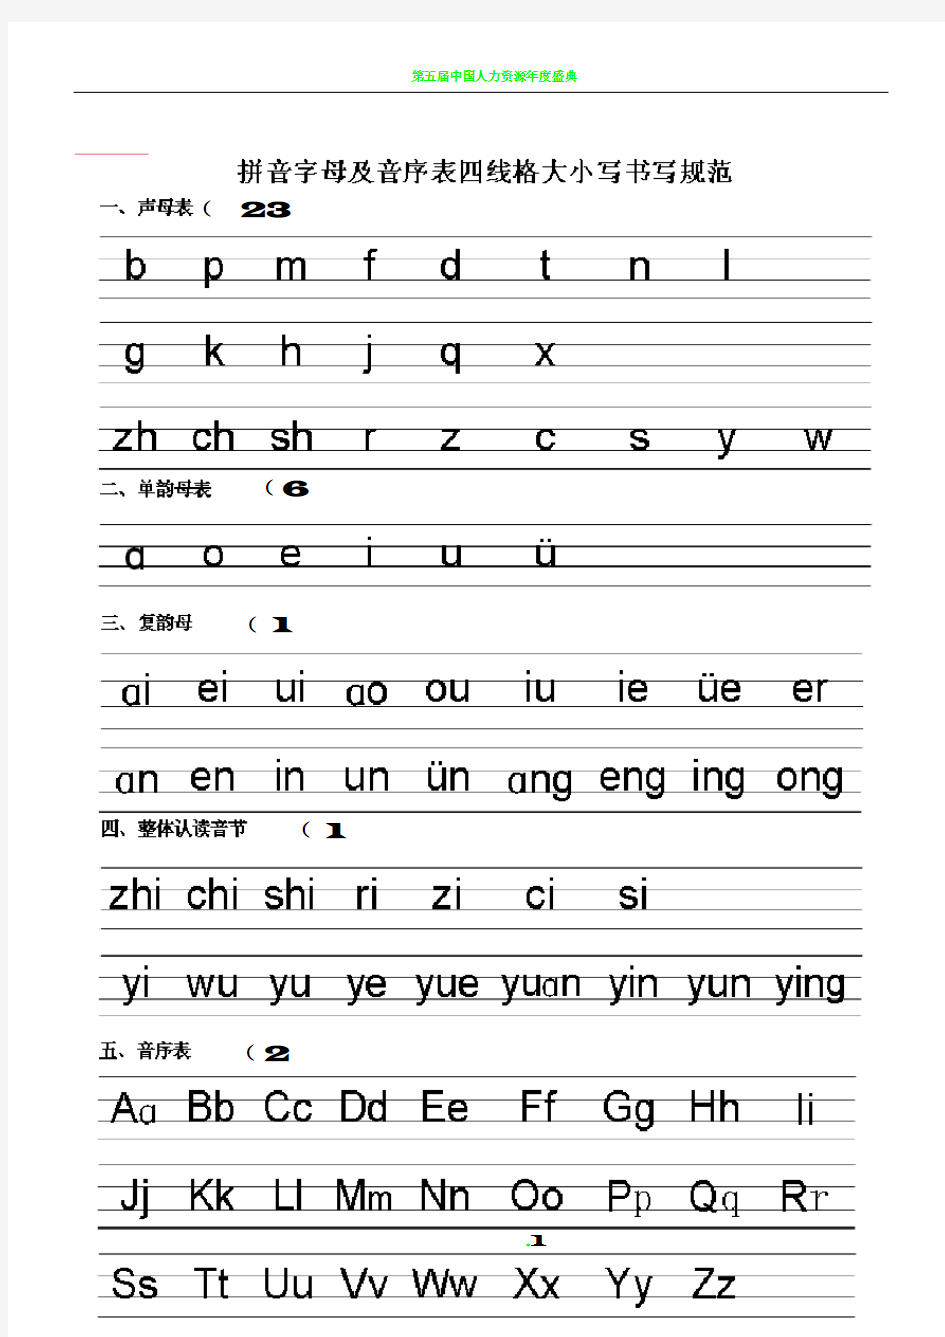 拼音字母及音序表四线格大小写书写规范打印版